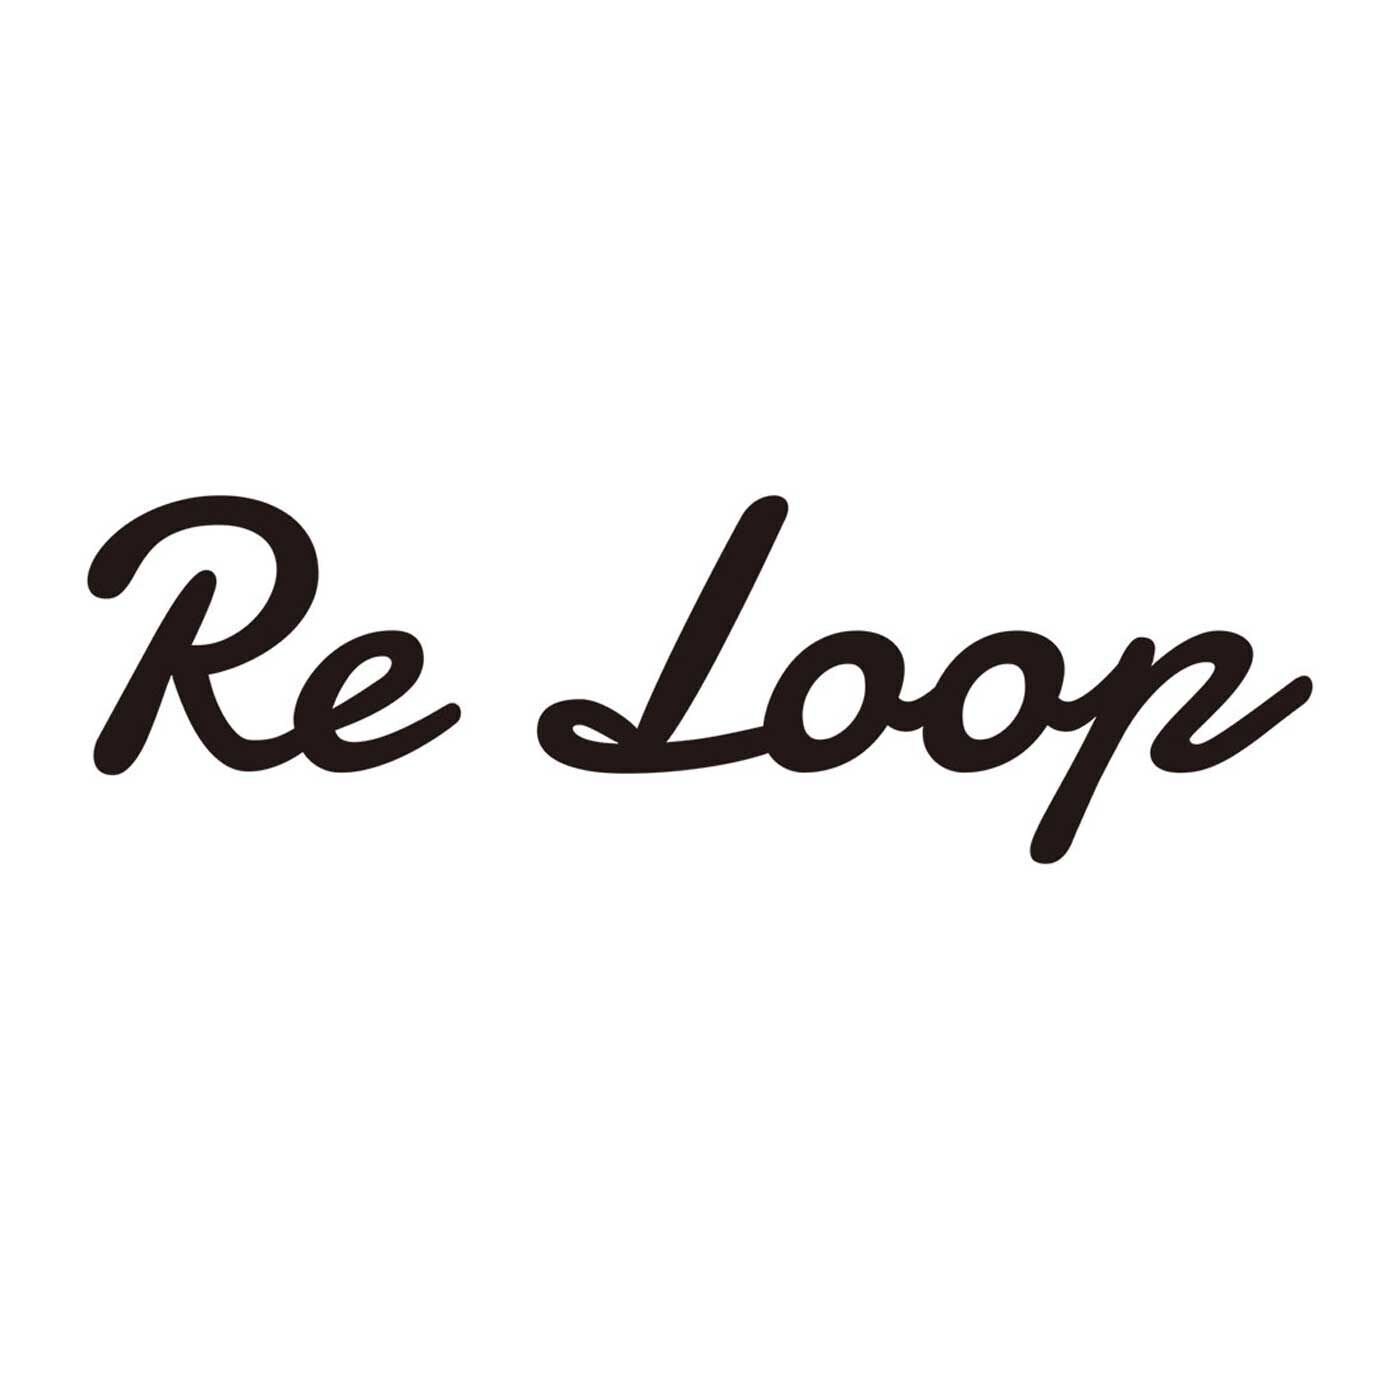 フェリシモの雑貨 Kraso|ReLoop ソックス〈ノルディック・エコウール・リブクルー〉の会|【Re Loop】奈良の老舗靴下工場「SOUKI」のブランドです。人と環境にやさしい素材を使い、代々受け継がれてきた技術や知識を次世代に引き継ぐことを使命に生まれました。自然とつながる。人とつながる。心とつながる。授かった自然と知恵に敬意を。靴下の産地、奈良県の広陵町には靴下に関する受け継がれた技術と、経験、知識がたくさんあります。それらの技術を後世へ持続可能な形で引き継ぐことは「Re Loop」の 使命でもあります。アップサイクルウールとリサイクルポリエステルを使用し、”受け継ぐ”をより意識して、希少な編み機でていねいに編み上げられたこの靴下は、ちょっぴり特別。それでいて毎日履くのにぴったりの相棒的存在です。